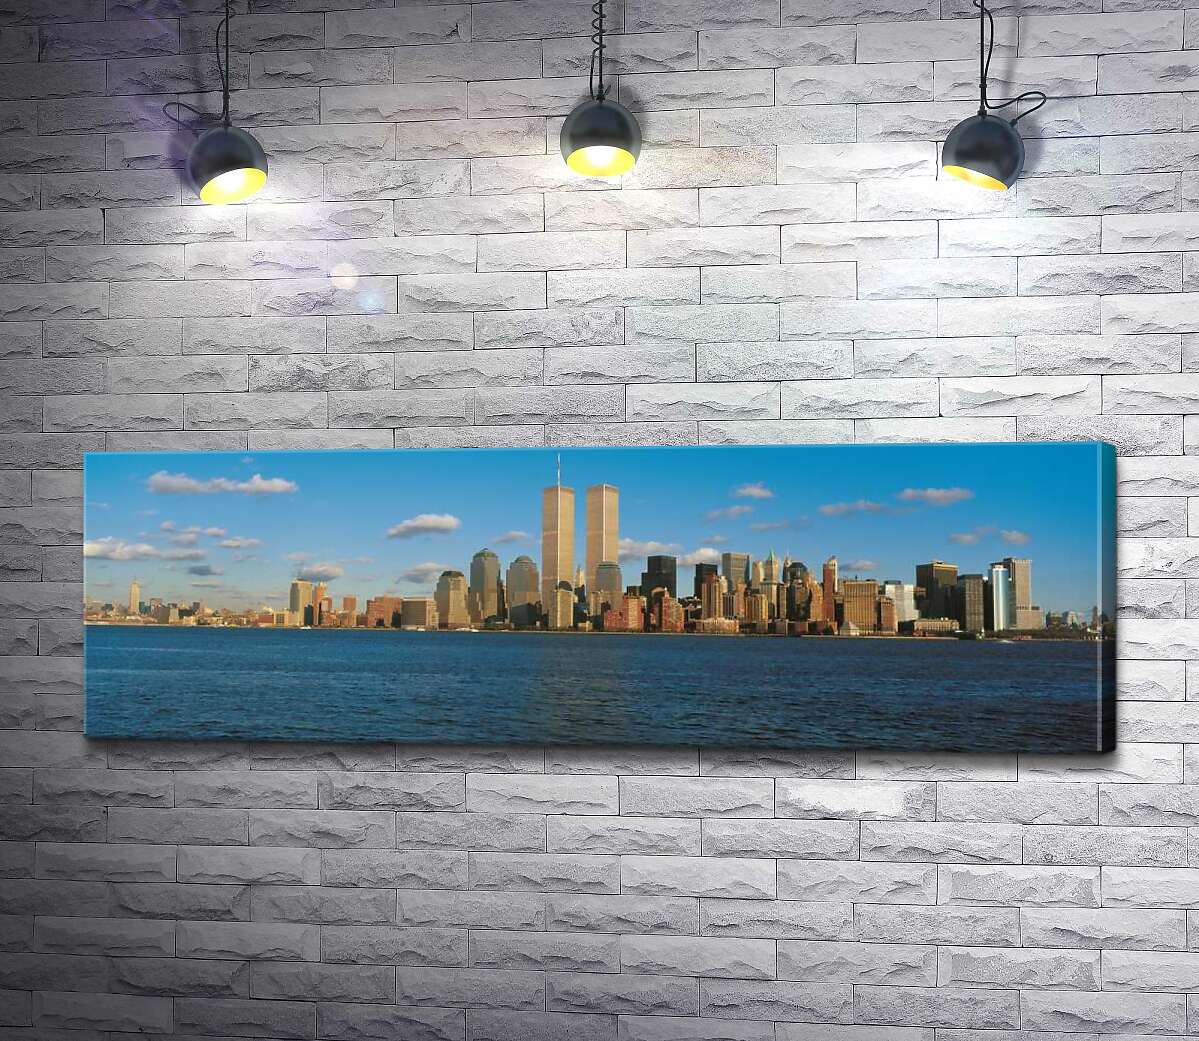 картина Скопление небоскребов Манхэттена (Manhattan) за заливом Нью-Йорк (New York Bay)